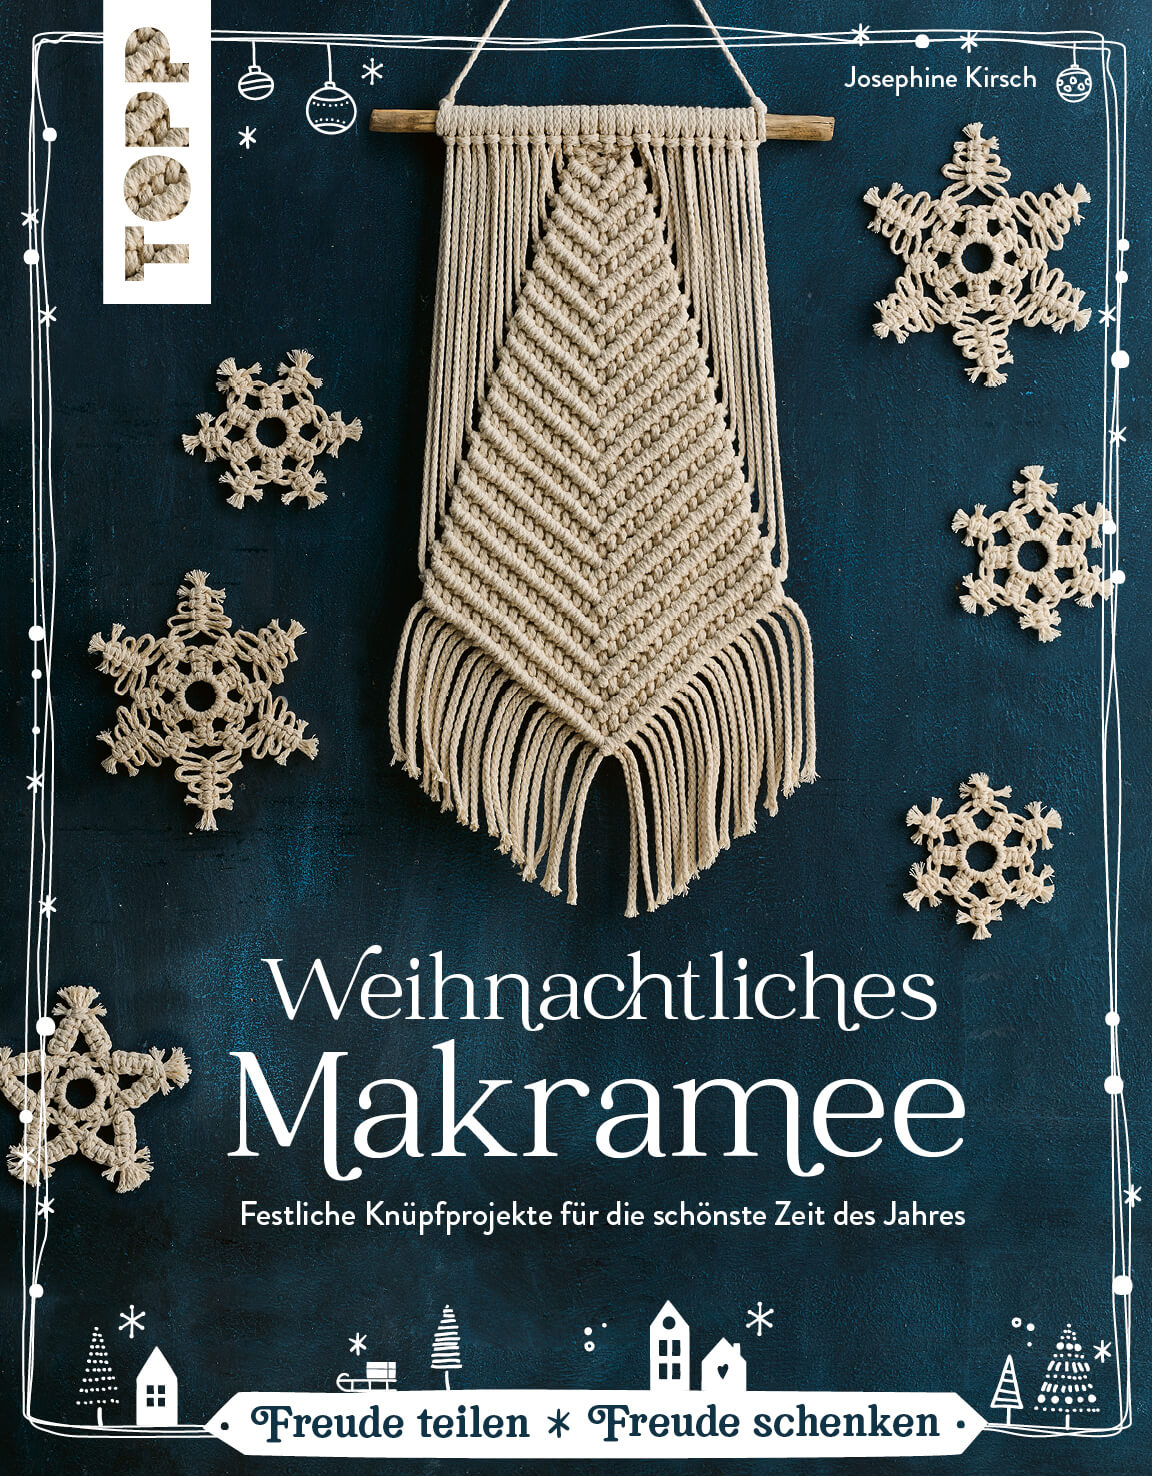 Weihnachtliches Makramee von Josephine Kirsch